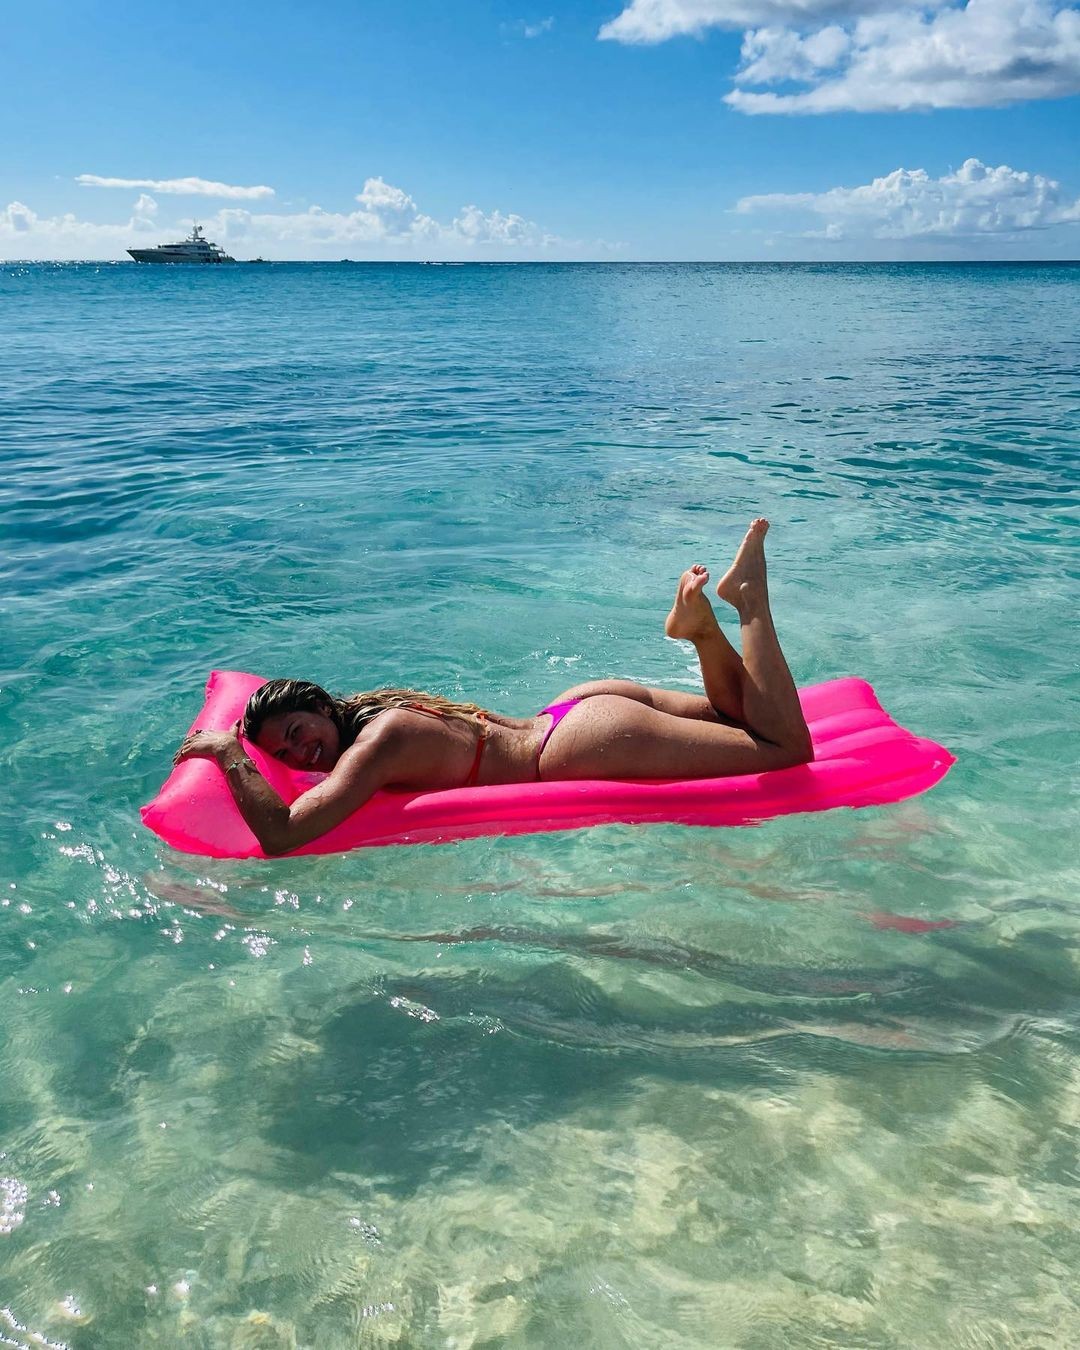 Lívia Andrade posa com boia em praia paradisíaca e recebe elogios  (Foto: Reprodução / Instagram)